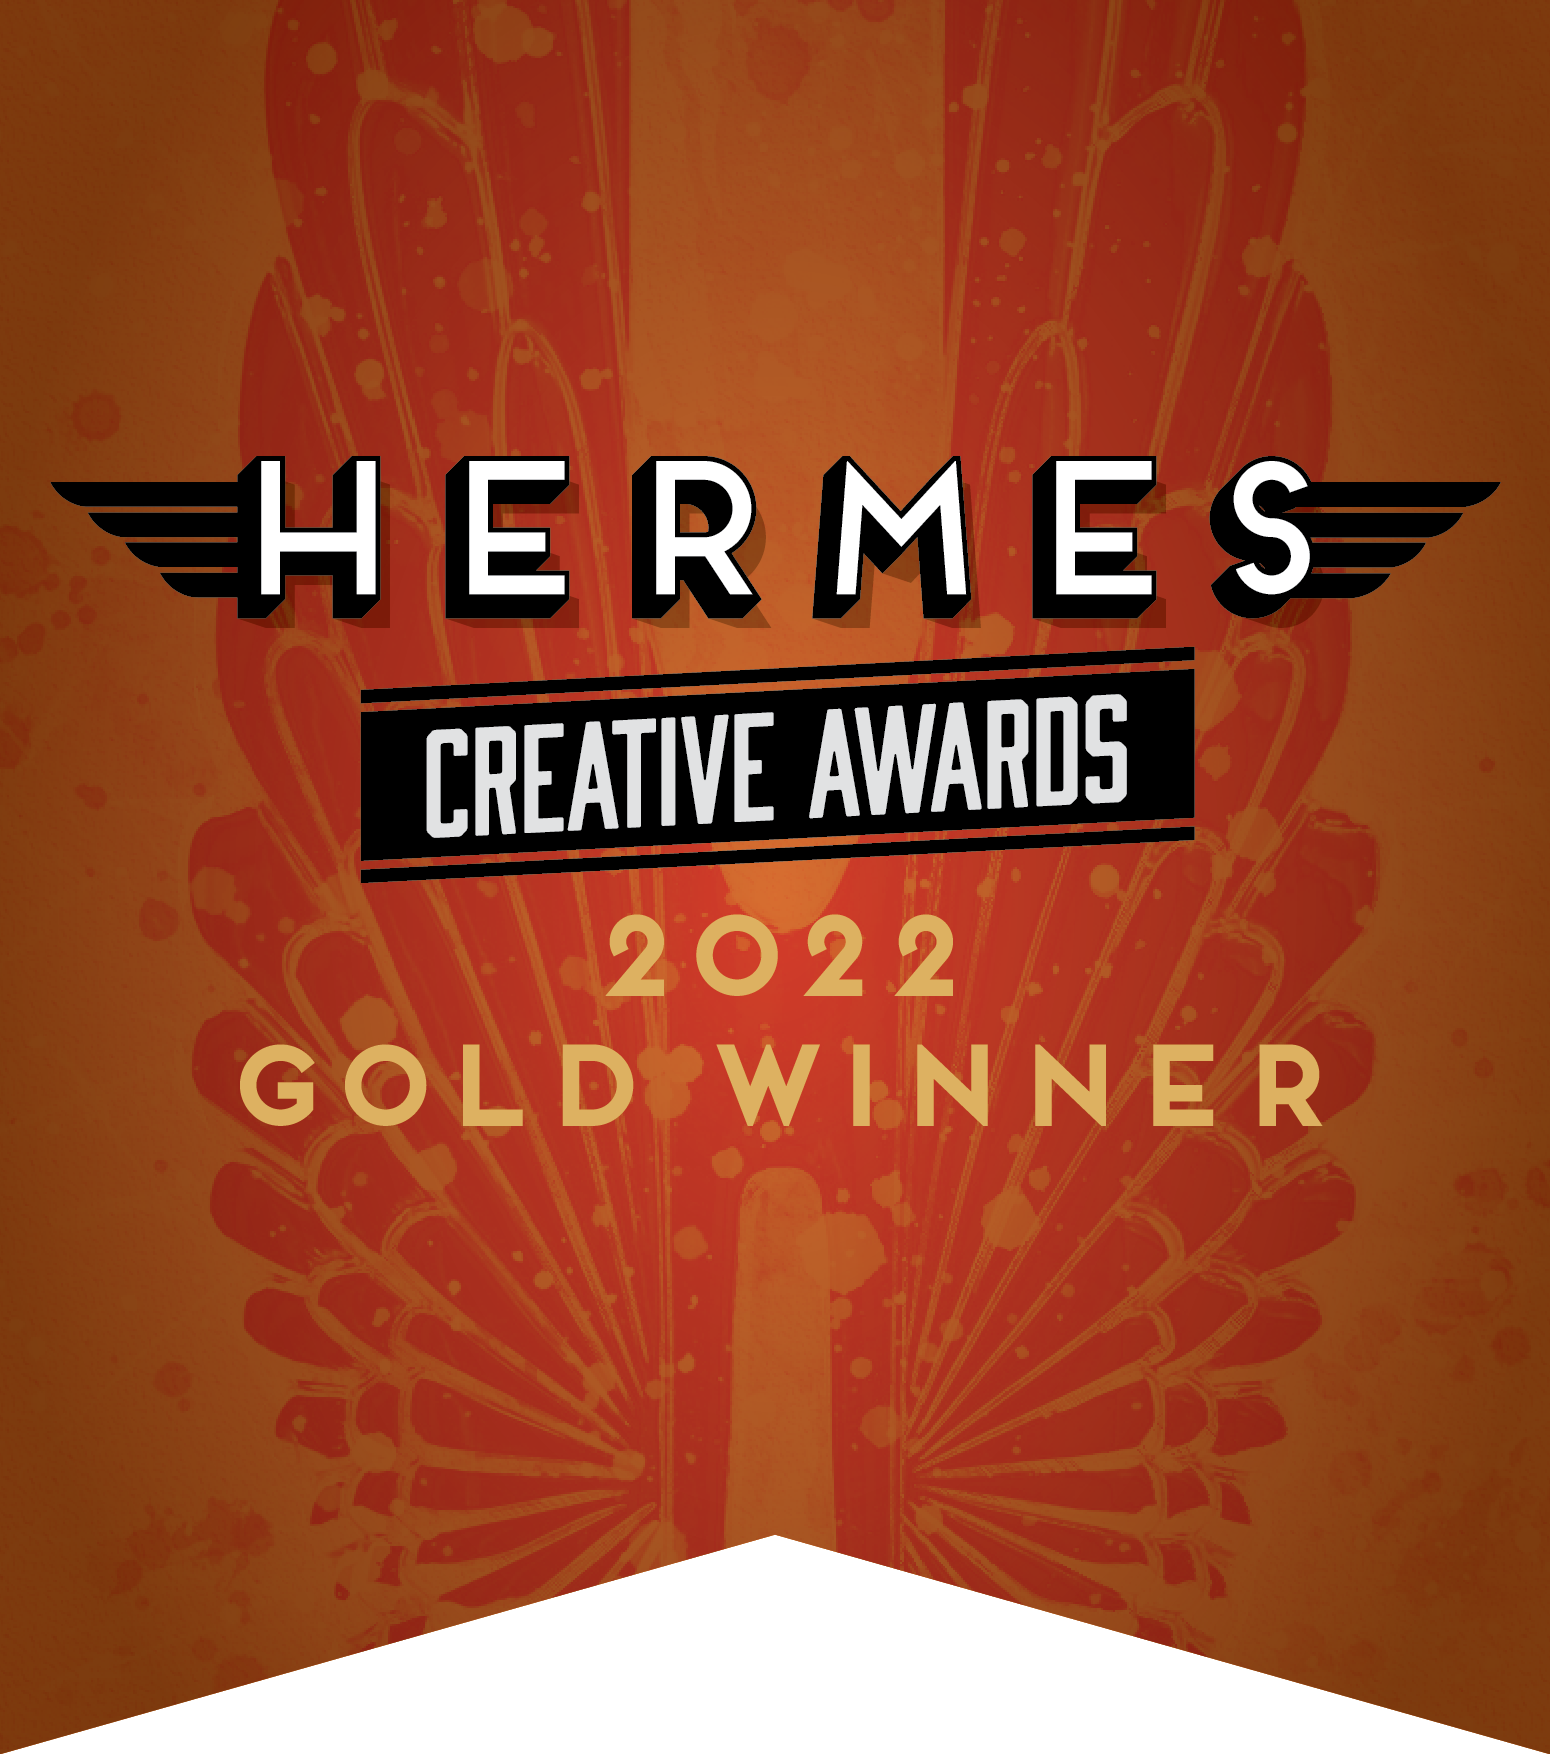 Hermes Creative Awards 2022 Gold Winner